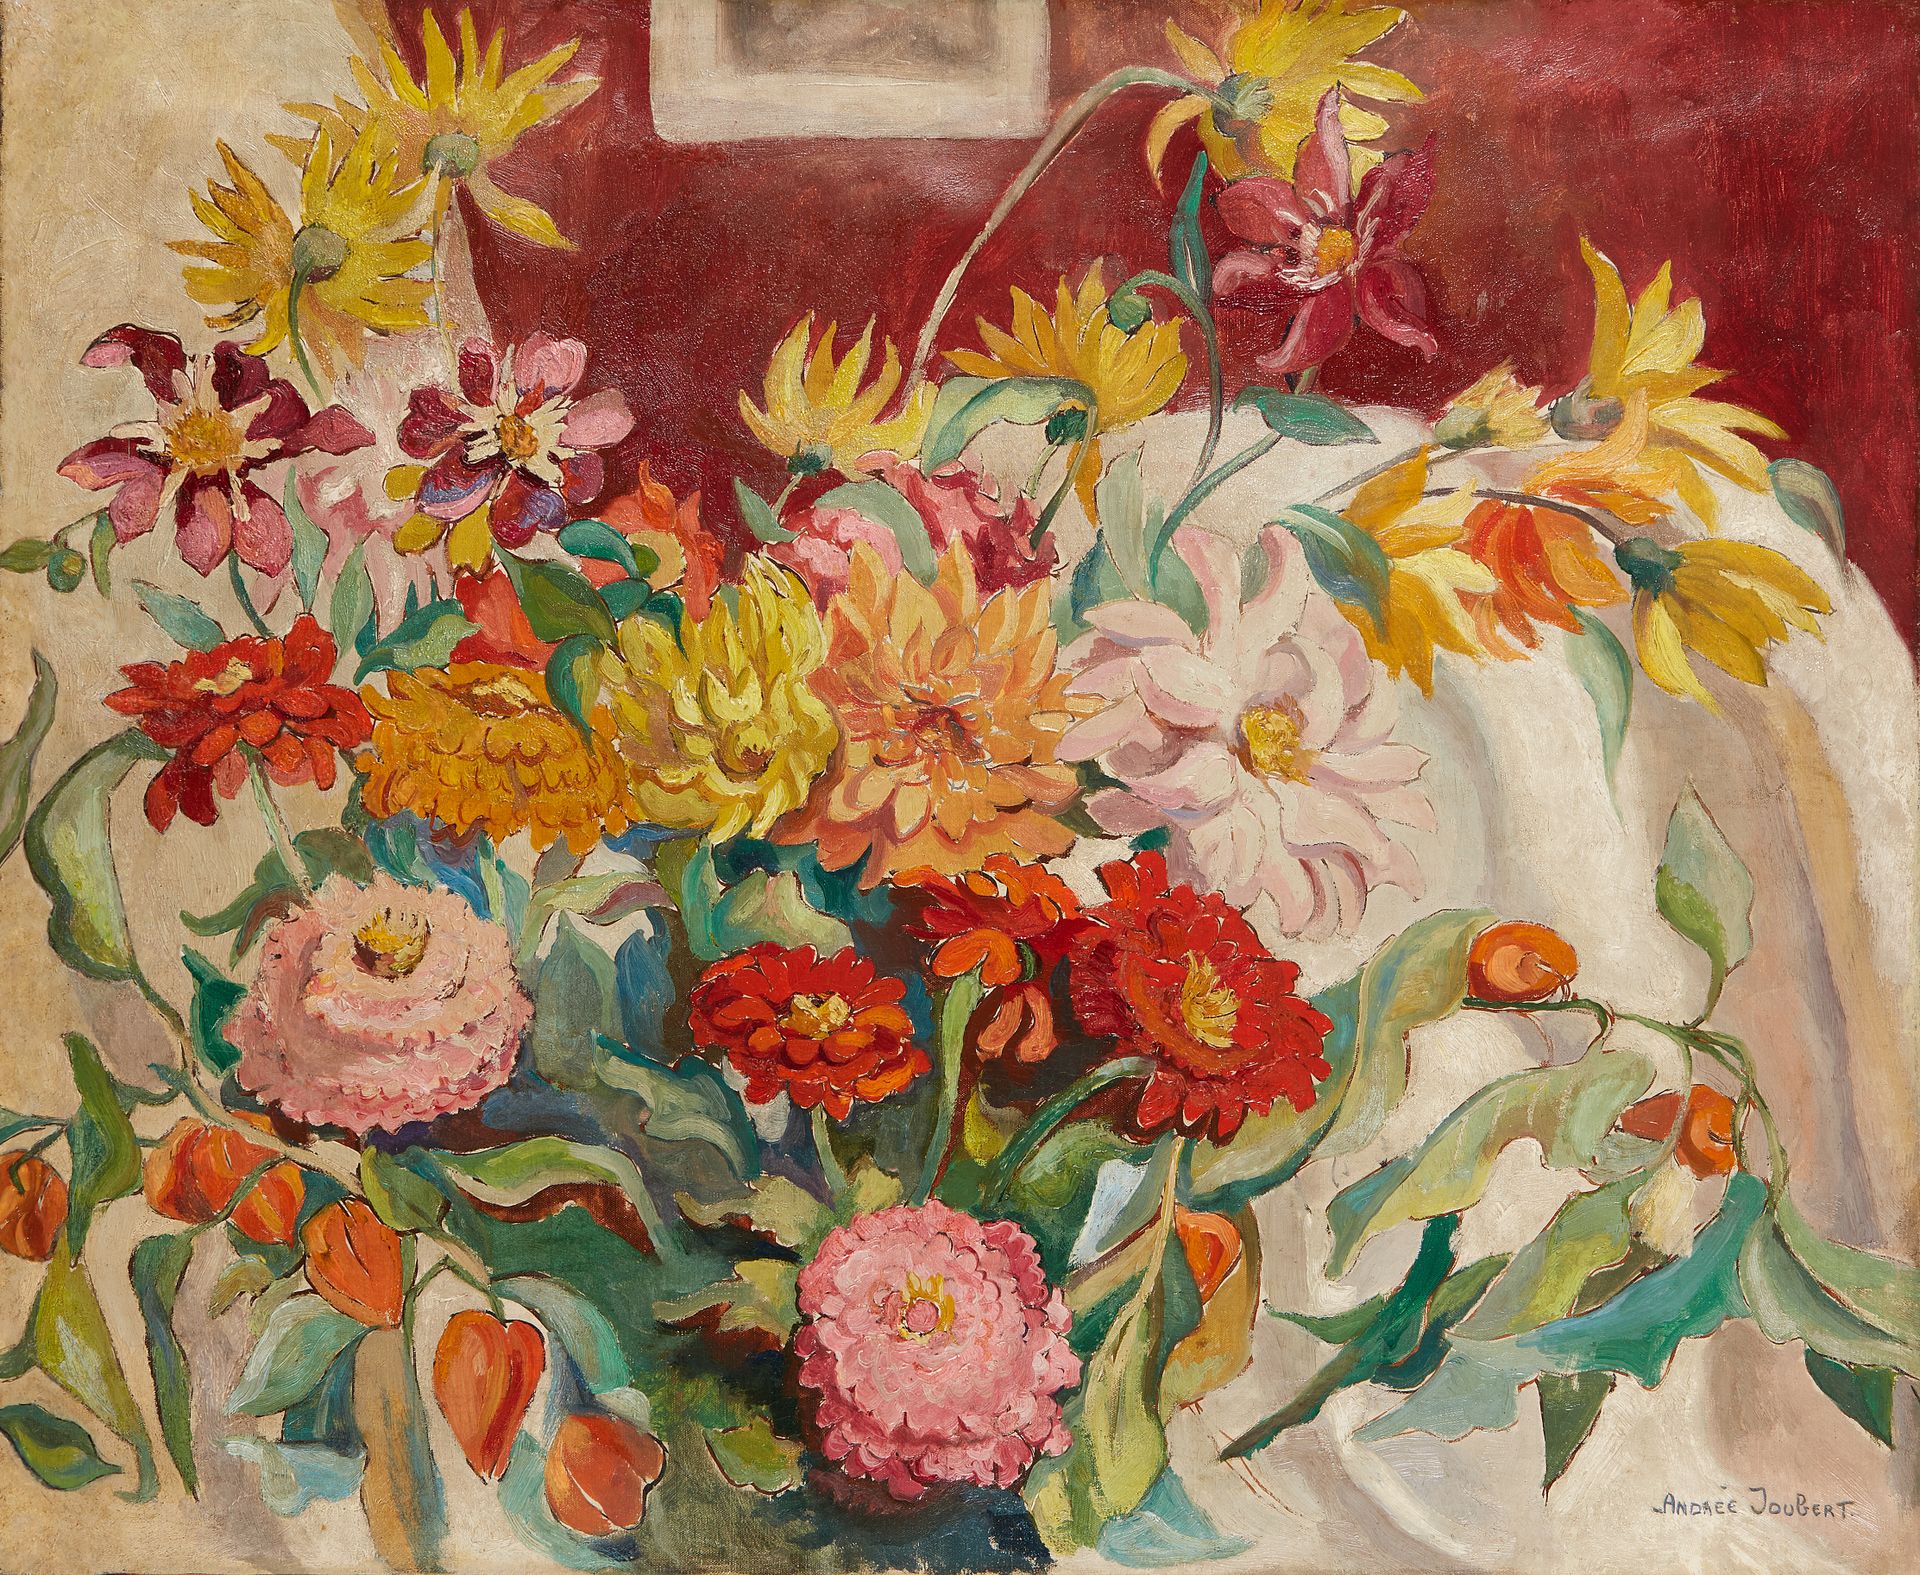 Null 安德烈-茹贝尔 (1894-1959)


大丽花花束


布面油画，右下角有签名


60 x 73 cm


修缮